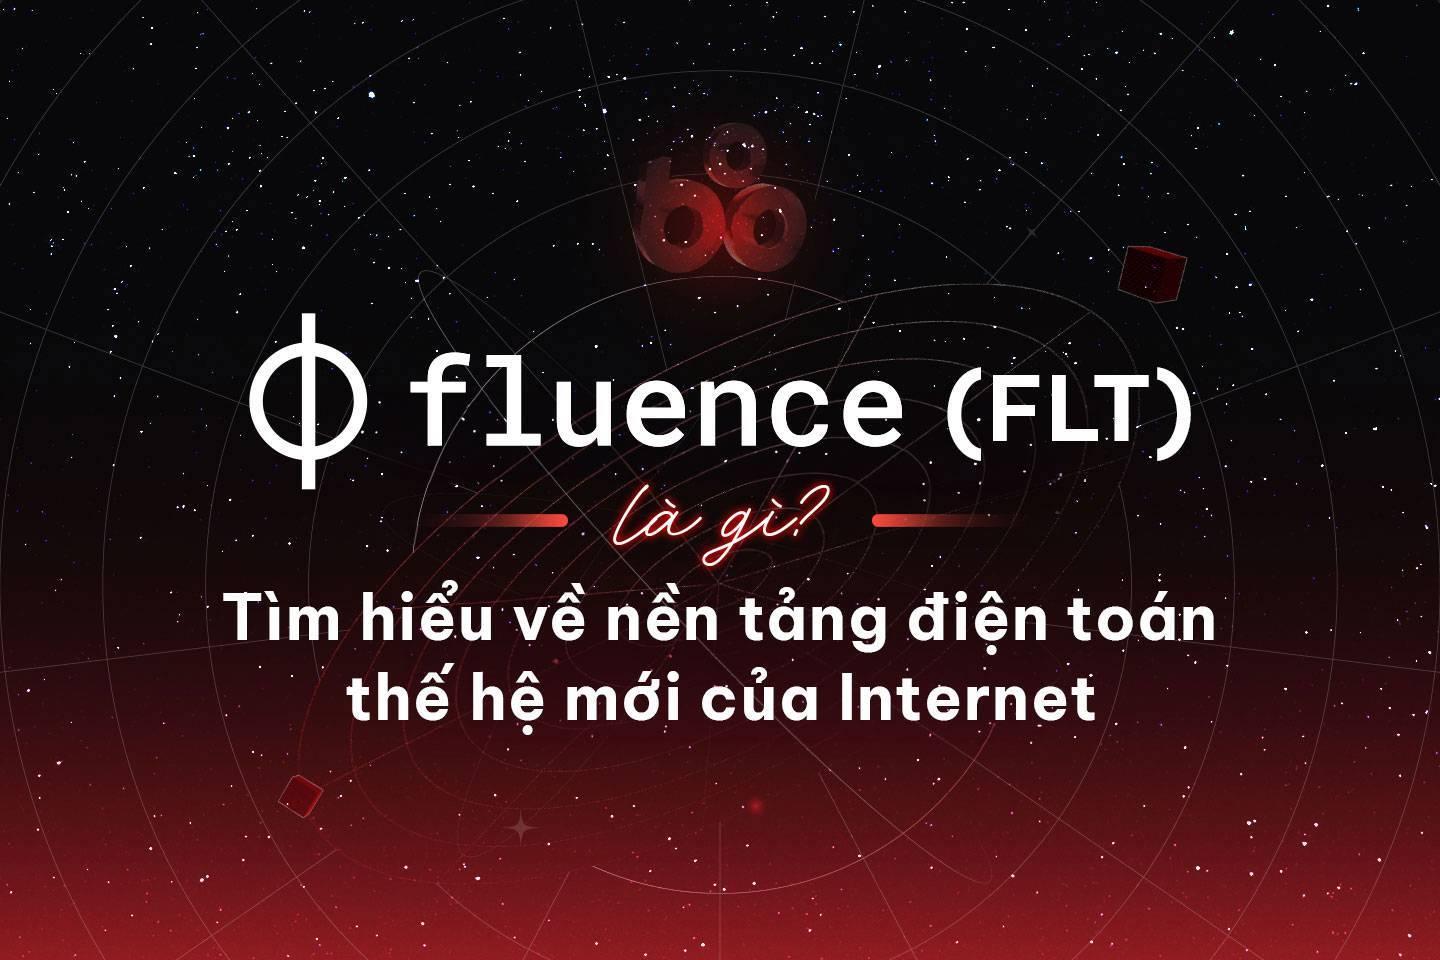 fluence-flt-la-gi-tim-hieu-ve-nen-tang-dien-toan-the-he-moi-cua-internet